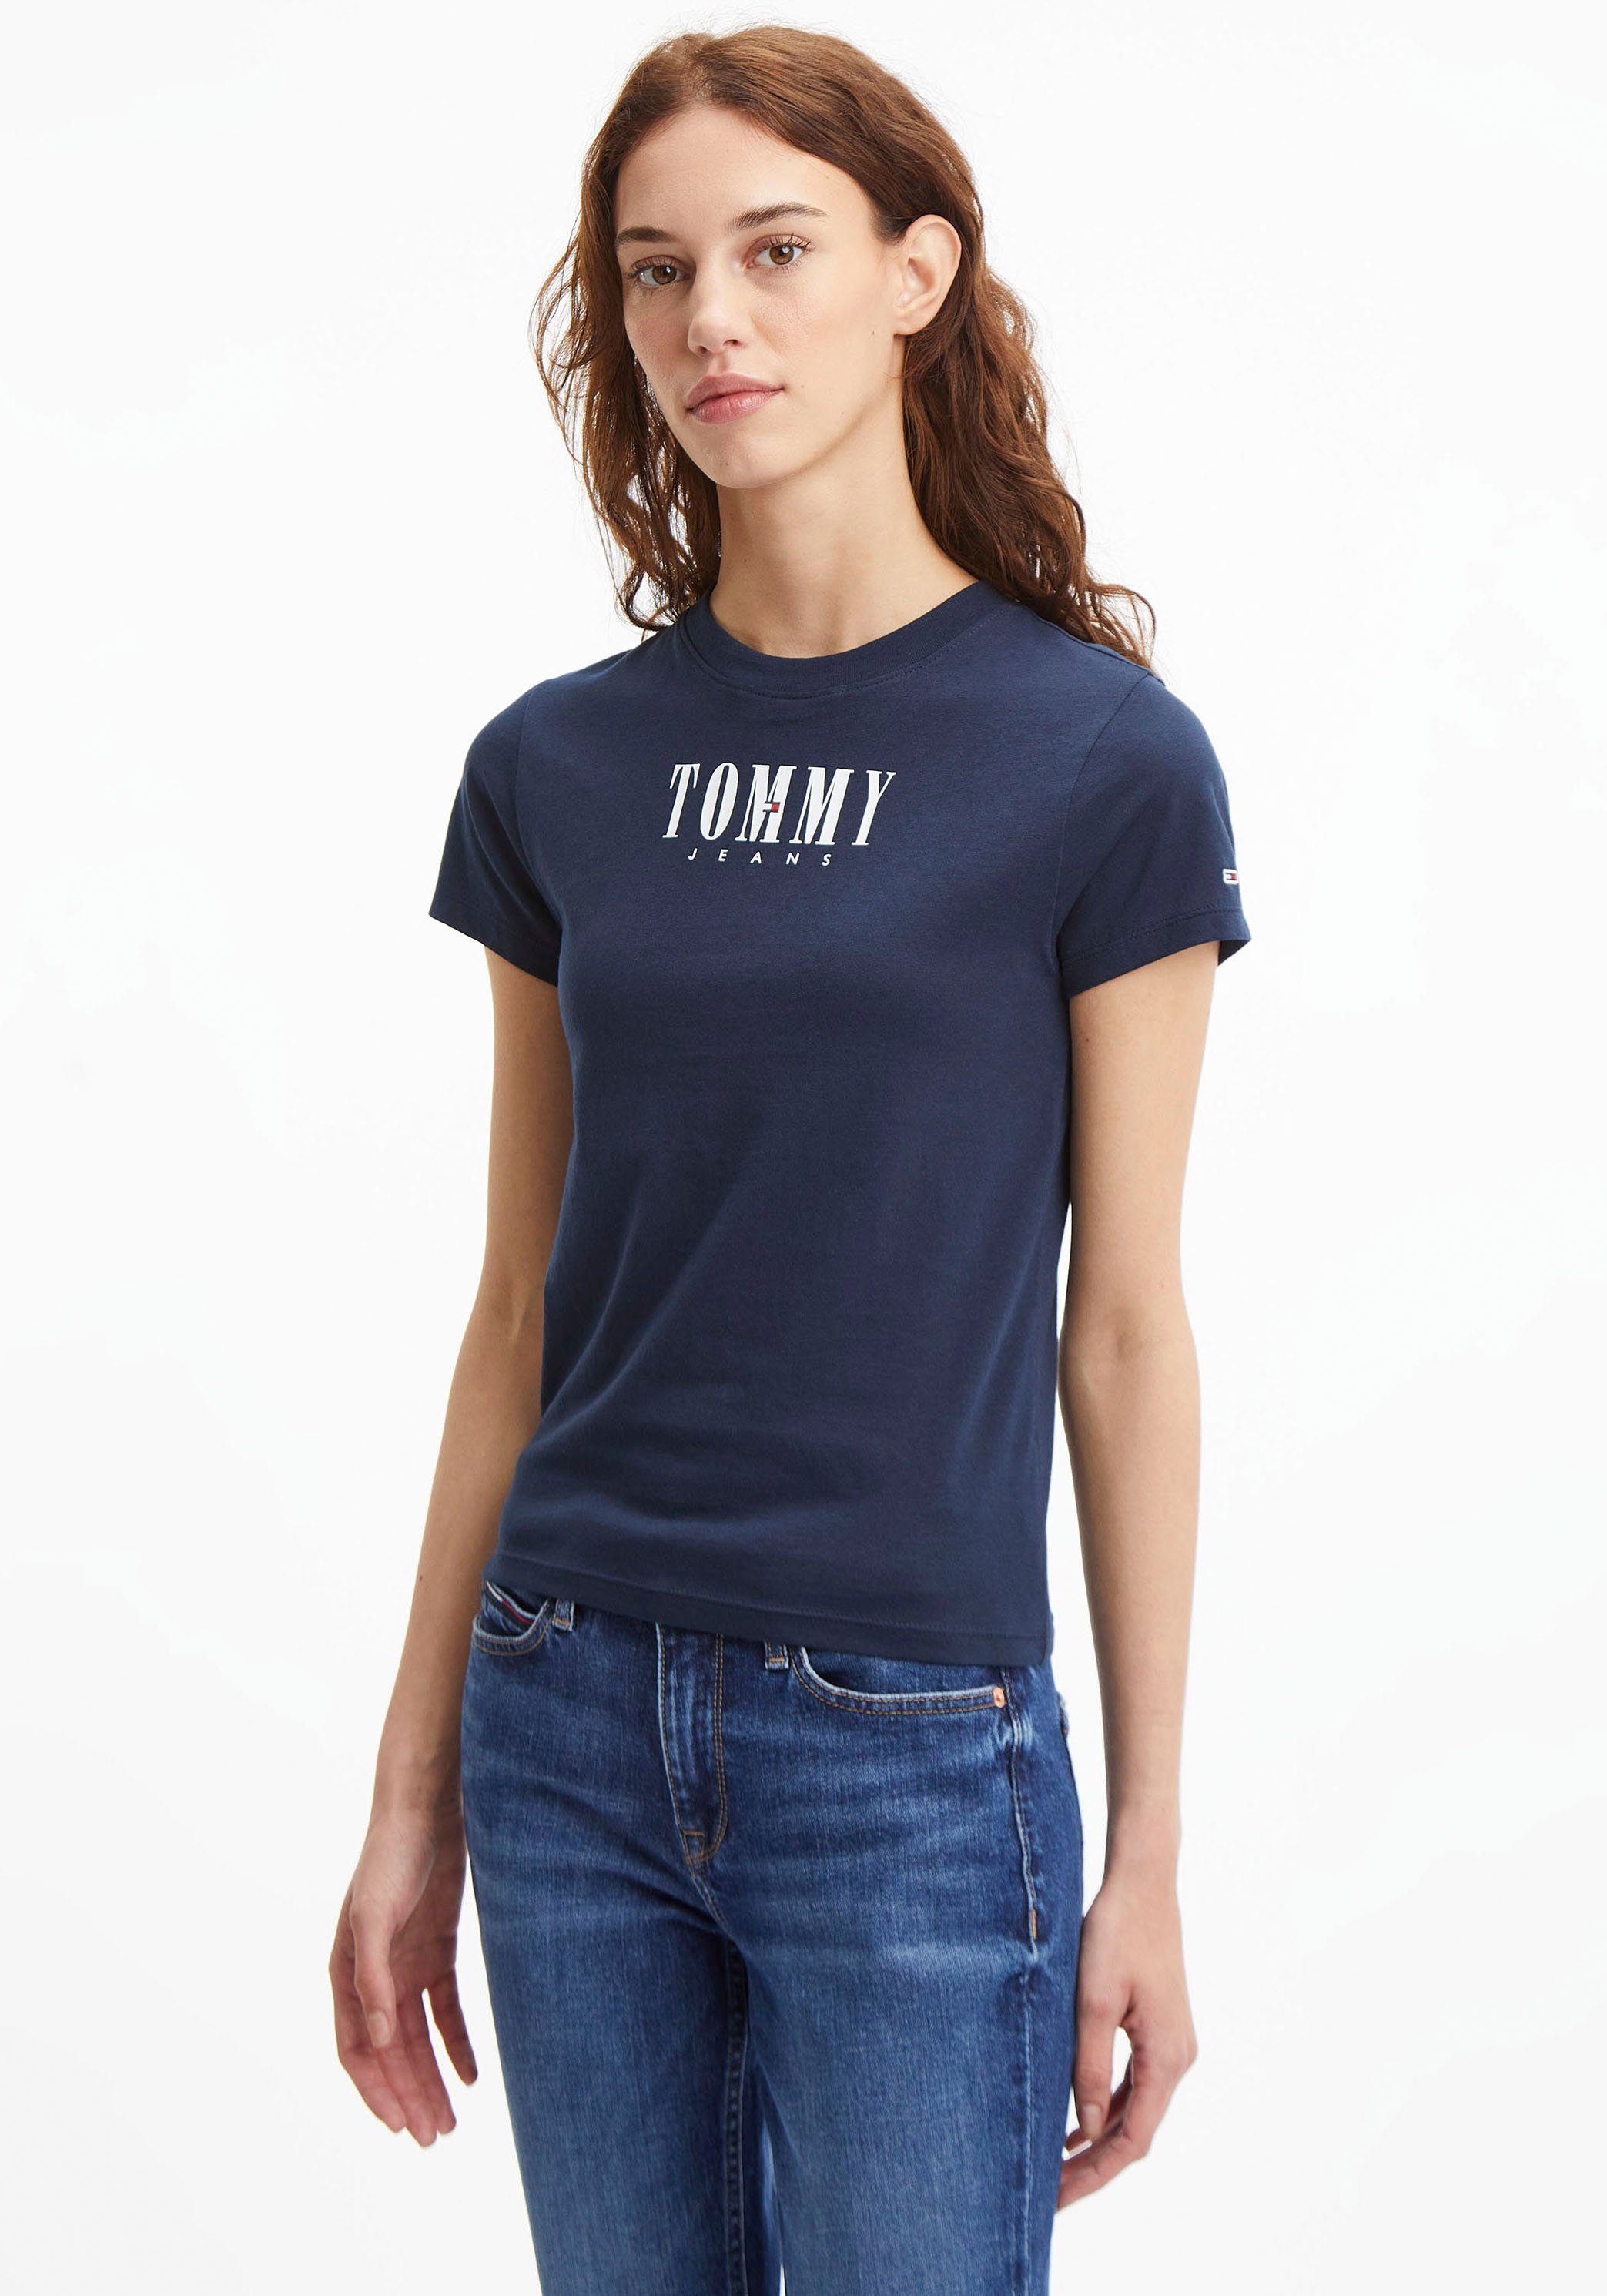 Blaue Tommy Hilfiger Damen T-Shirts kaufen online | OTTO